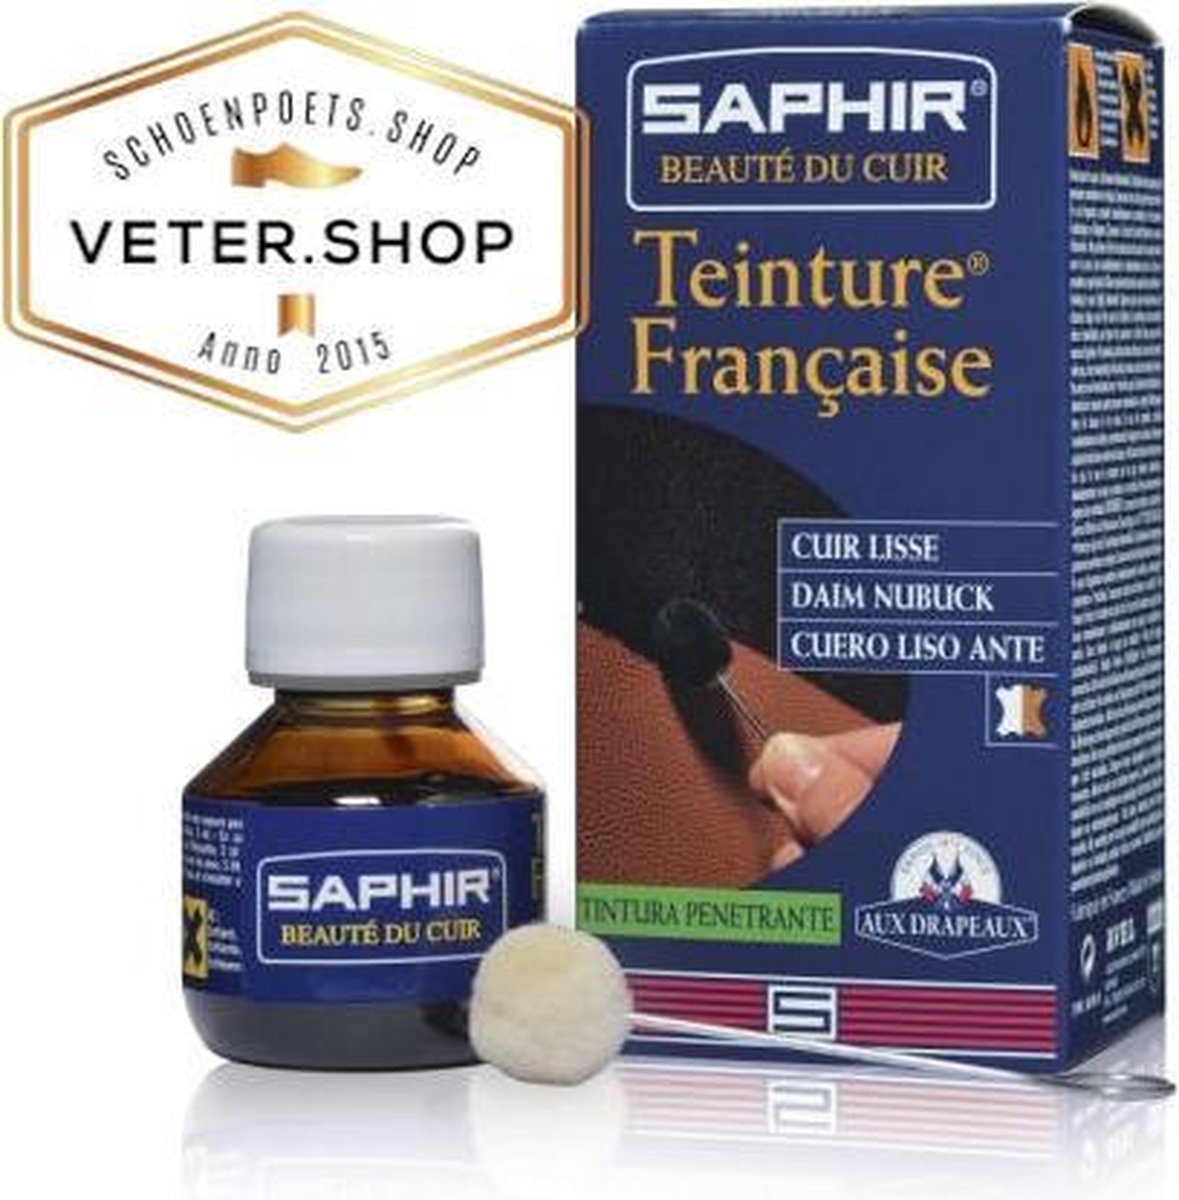 Saphir Teinture Francaise - Lederverf French Dye - 500 ml, Saphir 006 Navy